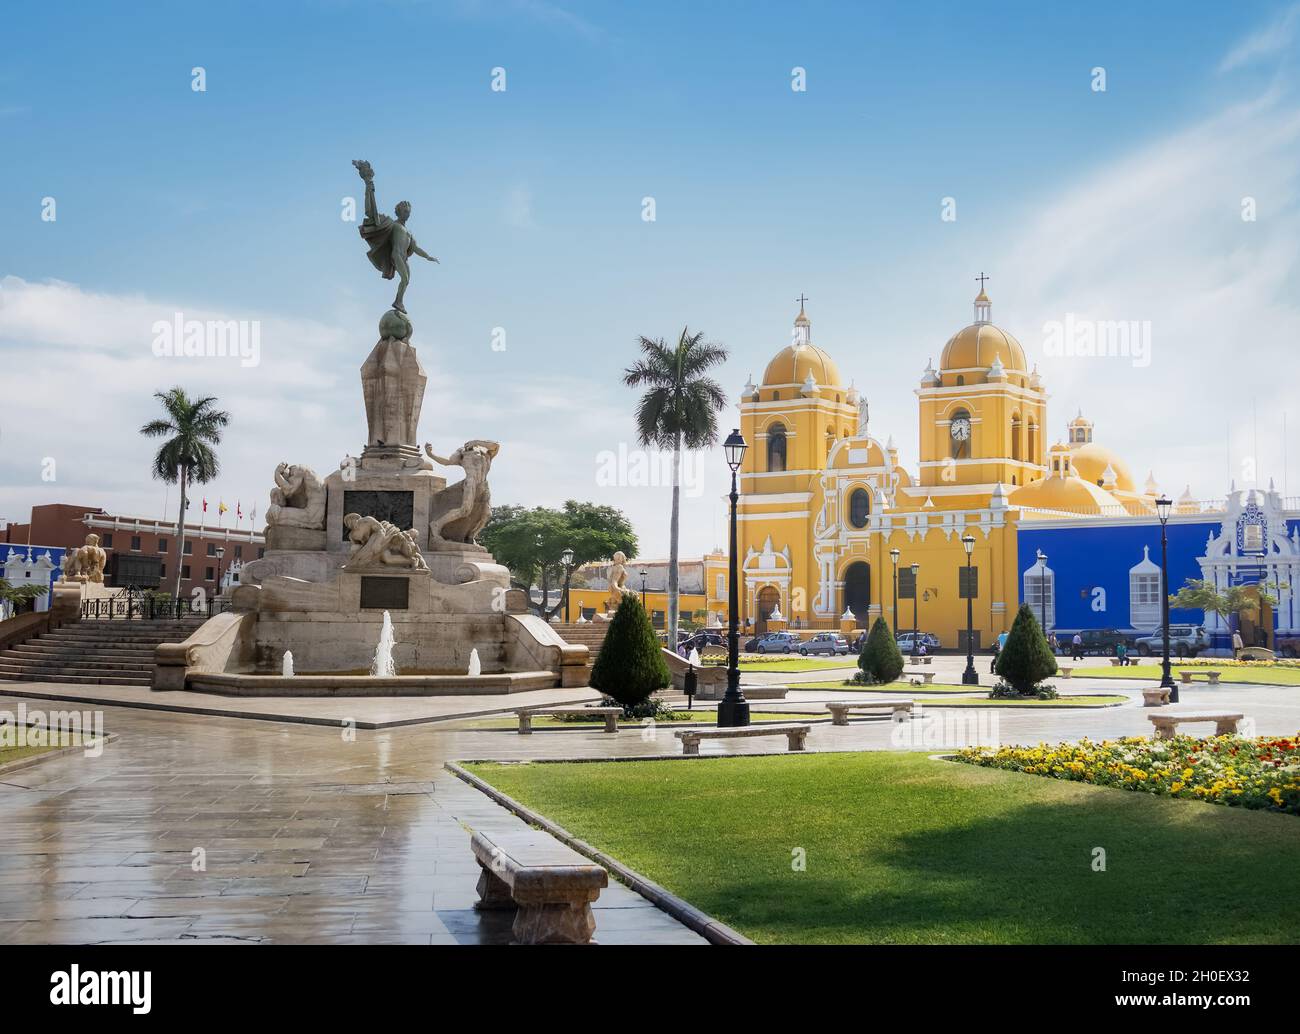 La place principale (Plaza de Armas) et de la cathédrale - Trujillo, Pérou Banque D'Images